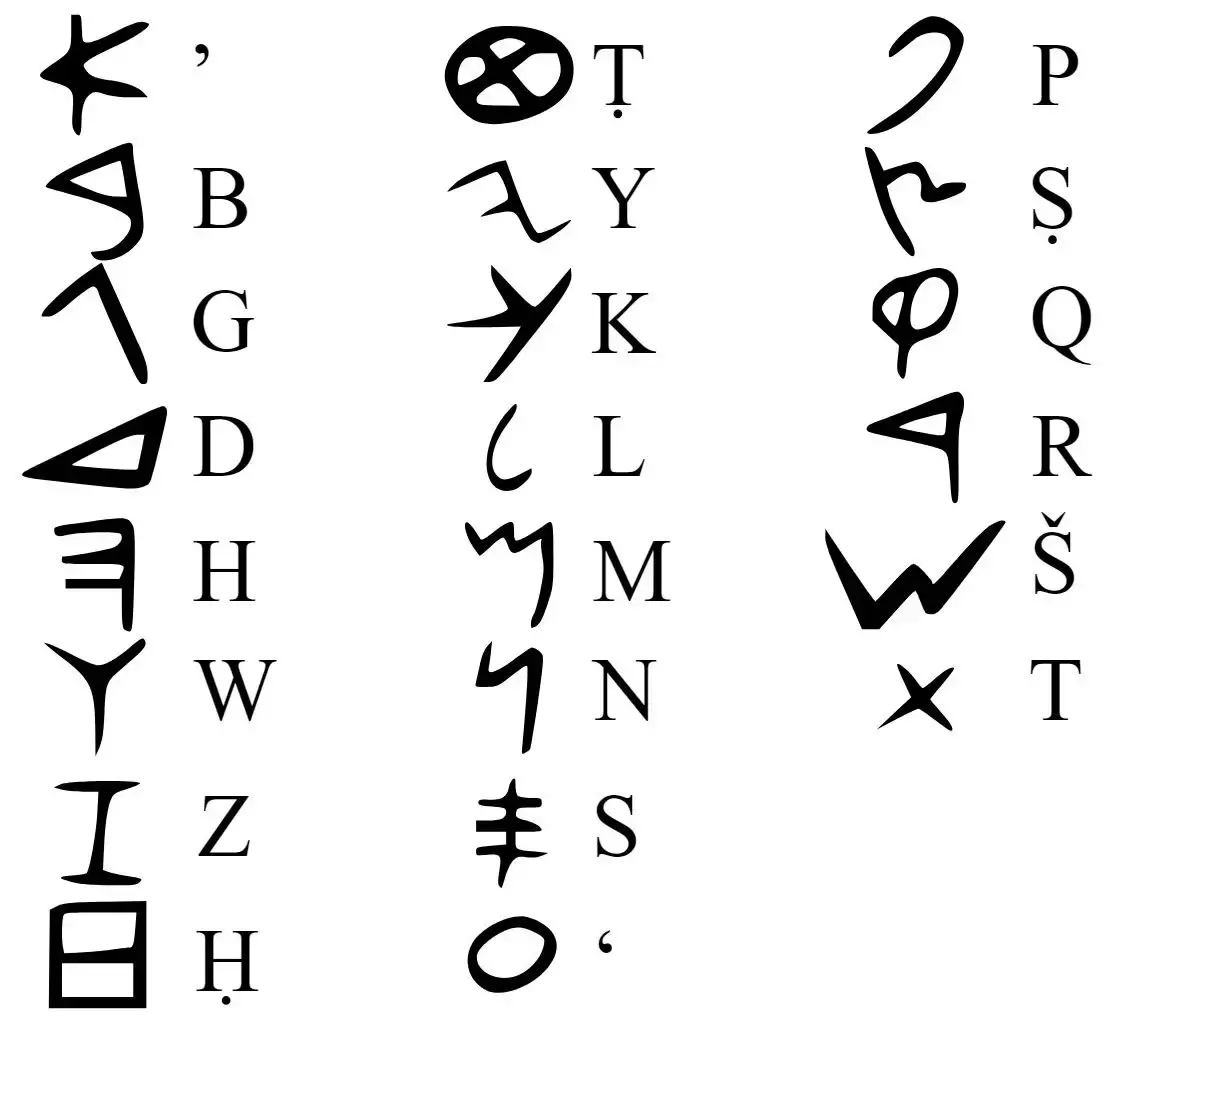 Historia del alfabeto: Del alfabeto fenicio surgieron el antiguo alfabeto hebreo, el alfabeto arameo y el alfabeto griego.